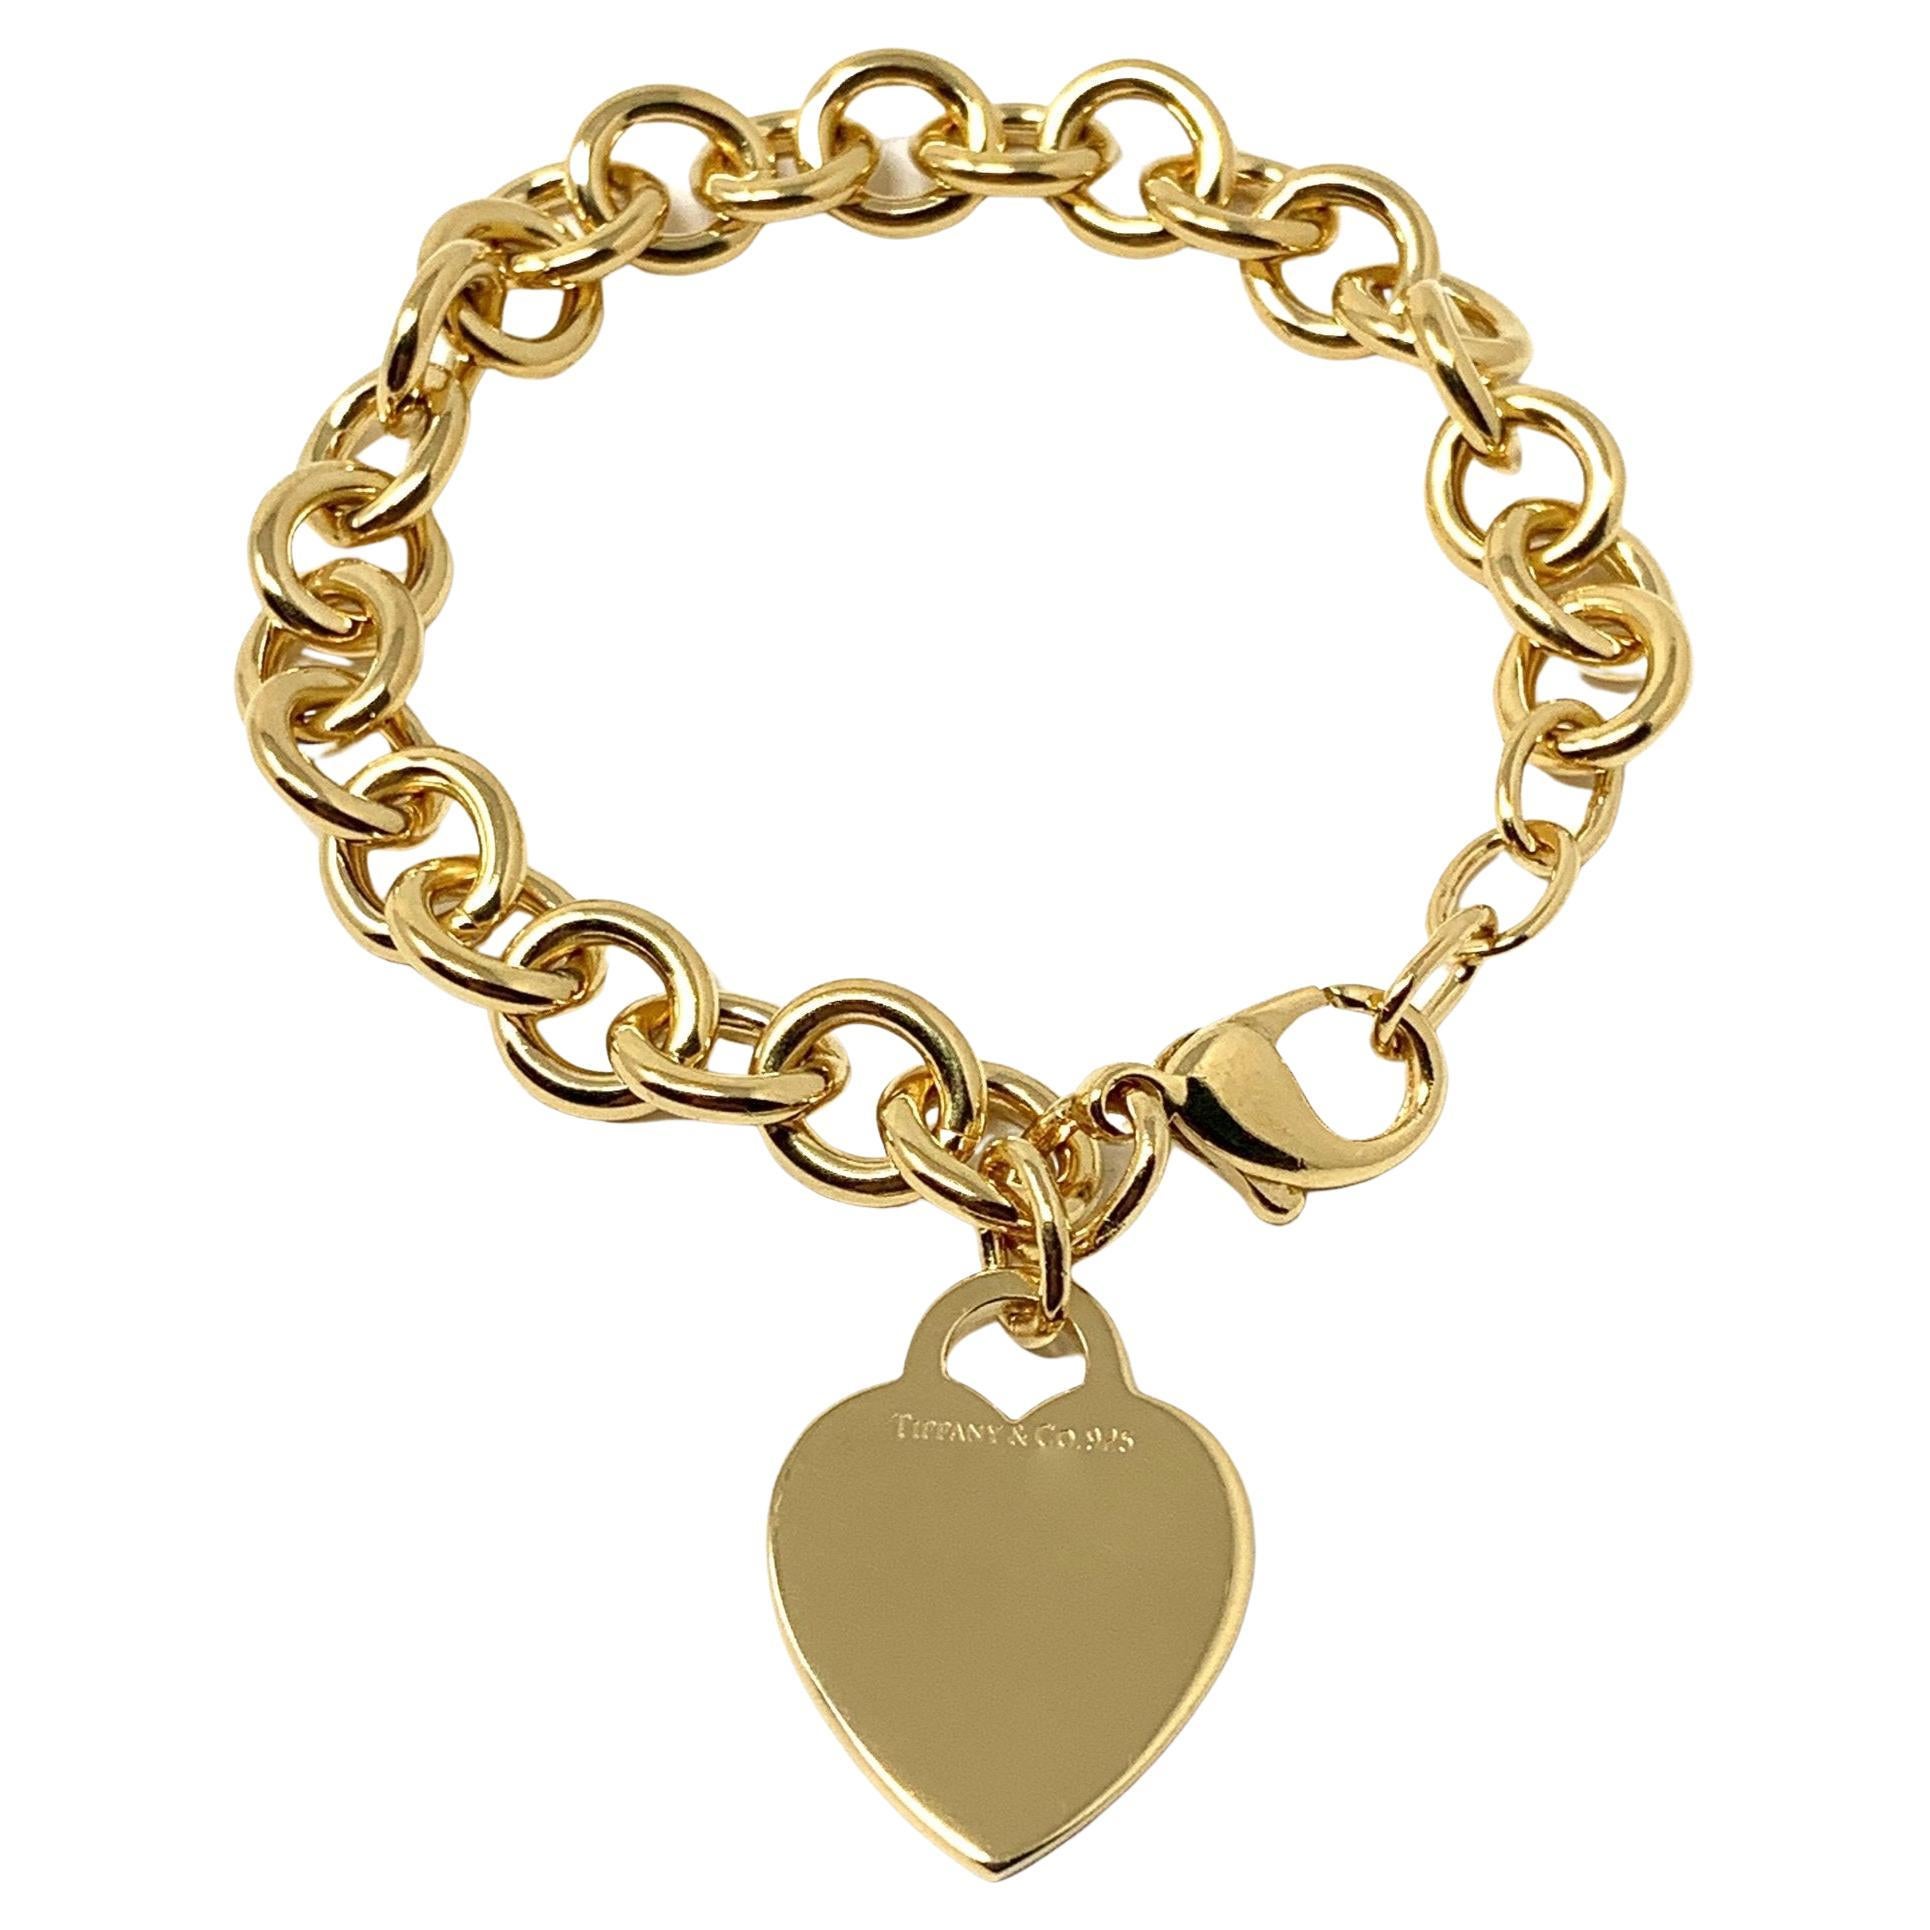 Yellow Gold Charm Bracelet, Jewelry Box Staple.  Tiffany charm bracelet, Gold  charm bracelet, Tiffany jewelry